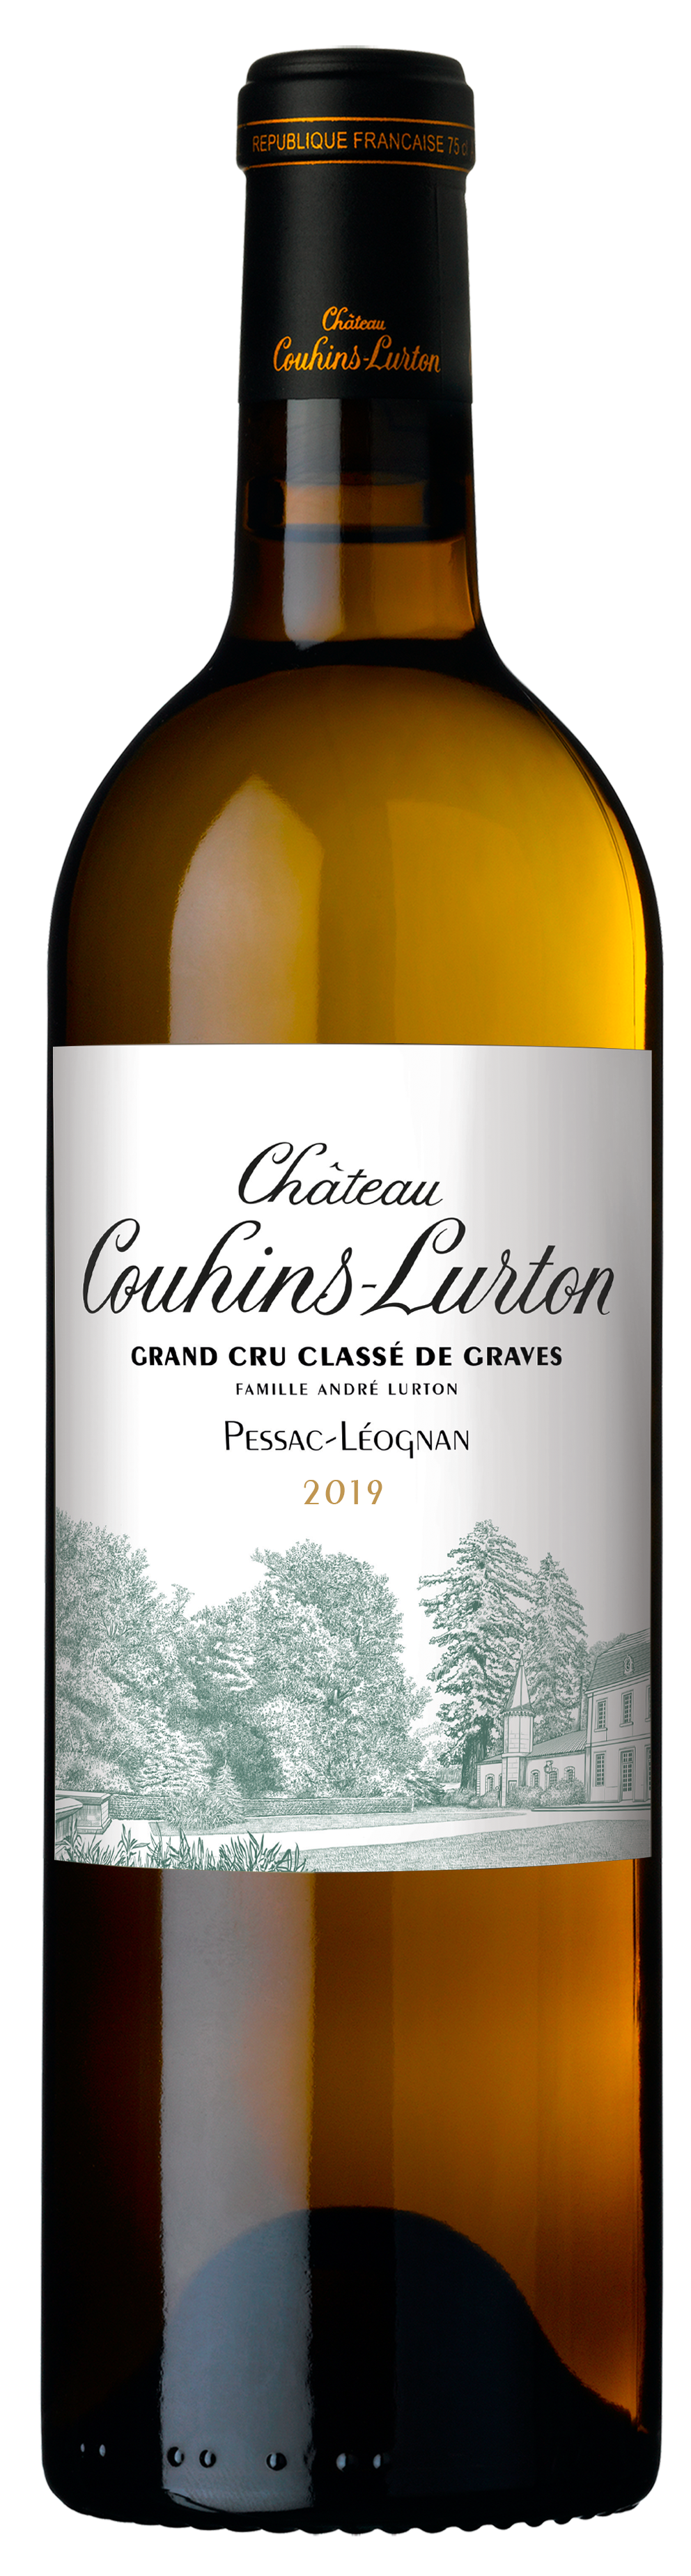 Visuel bouteille Château Couhins-Lurton blanc 2019